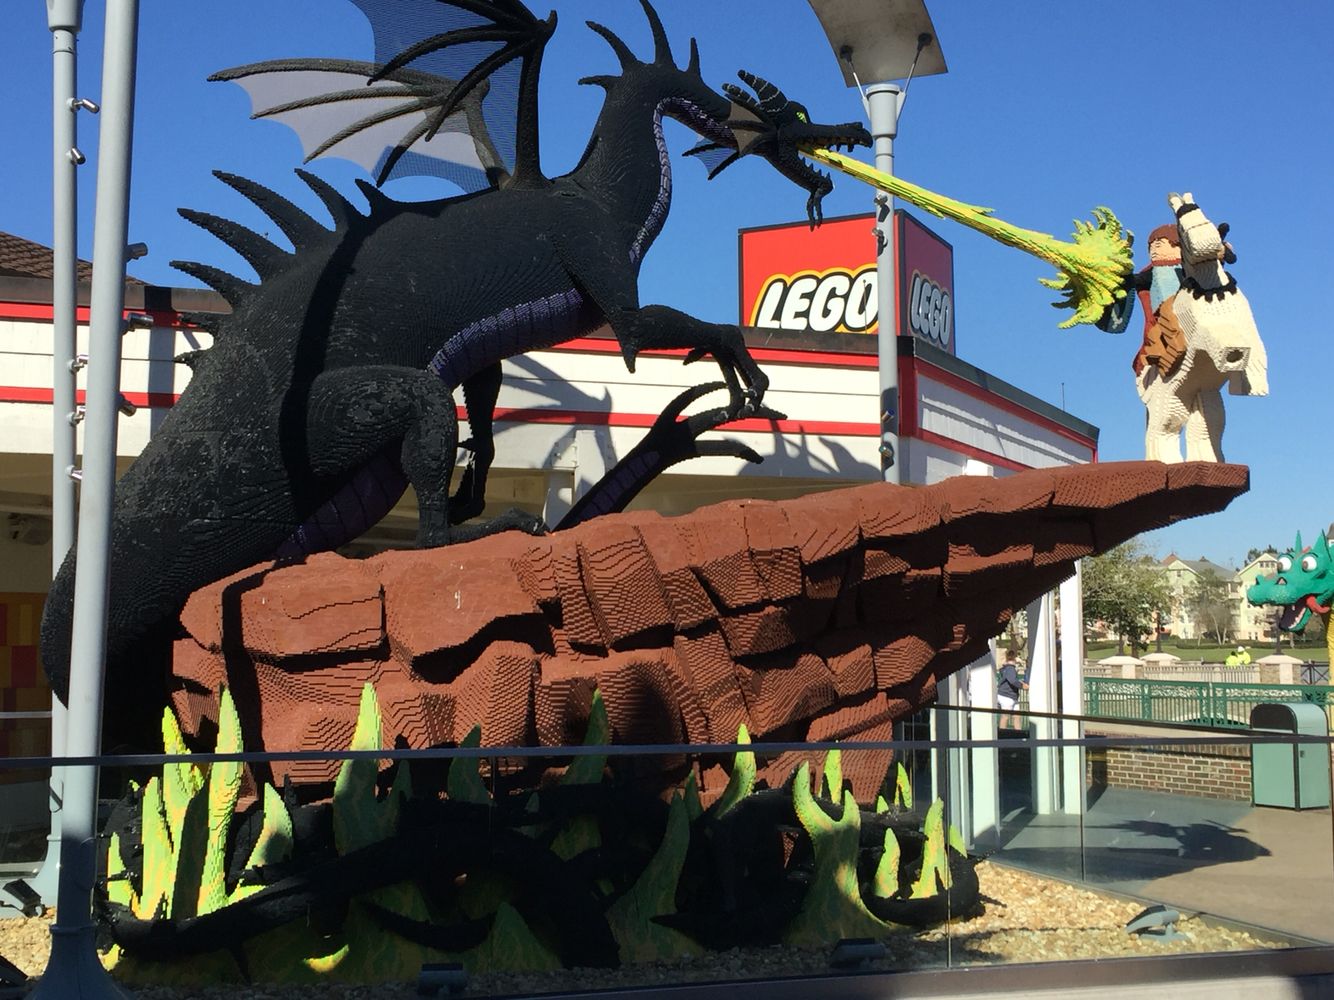 Tienda Lego - Disney Springs